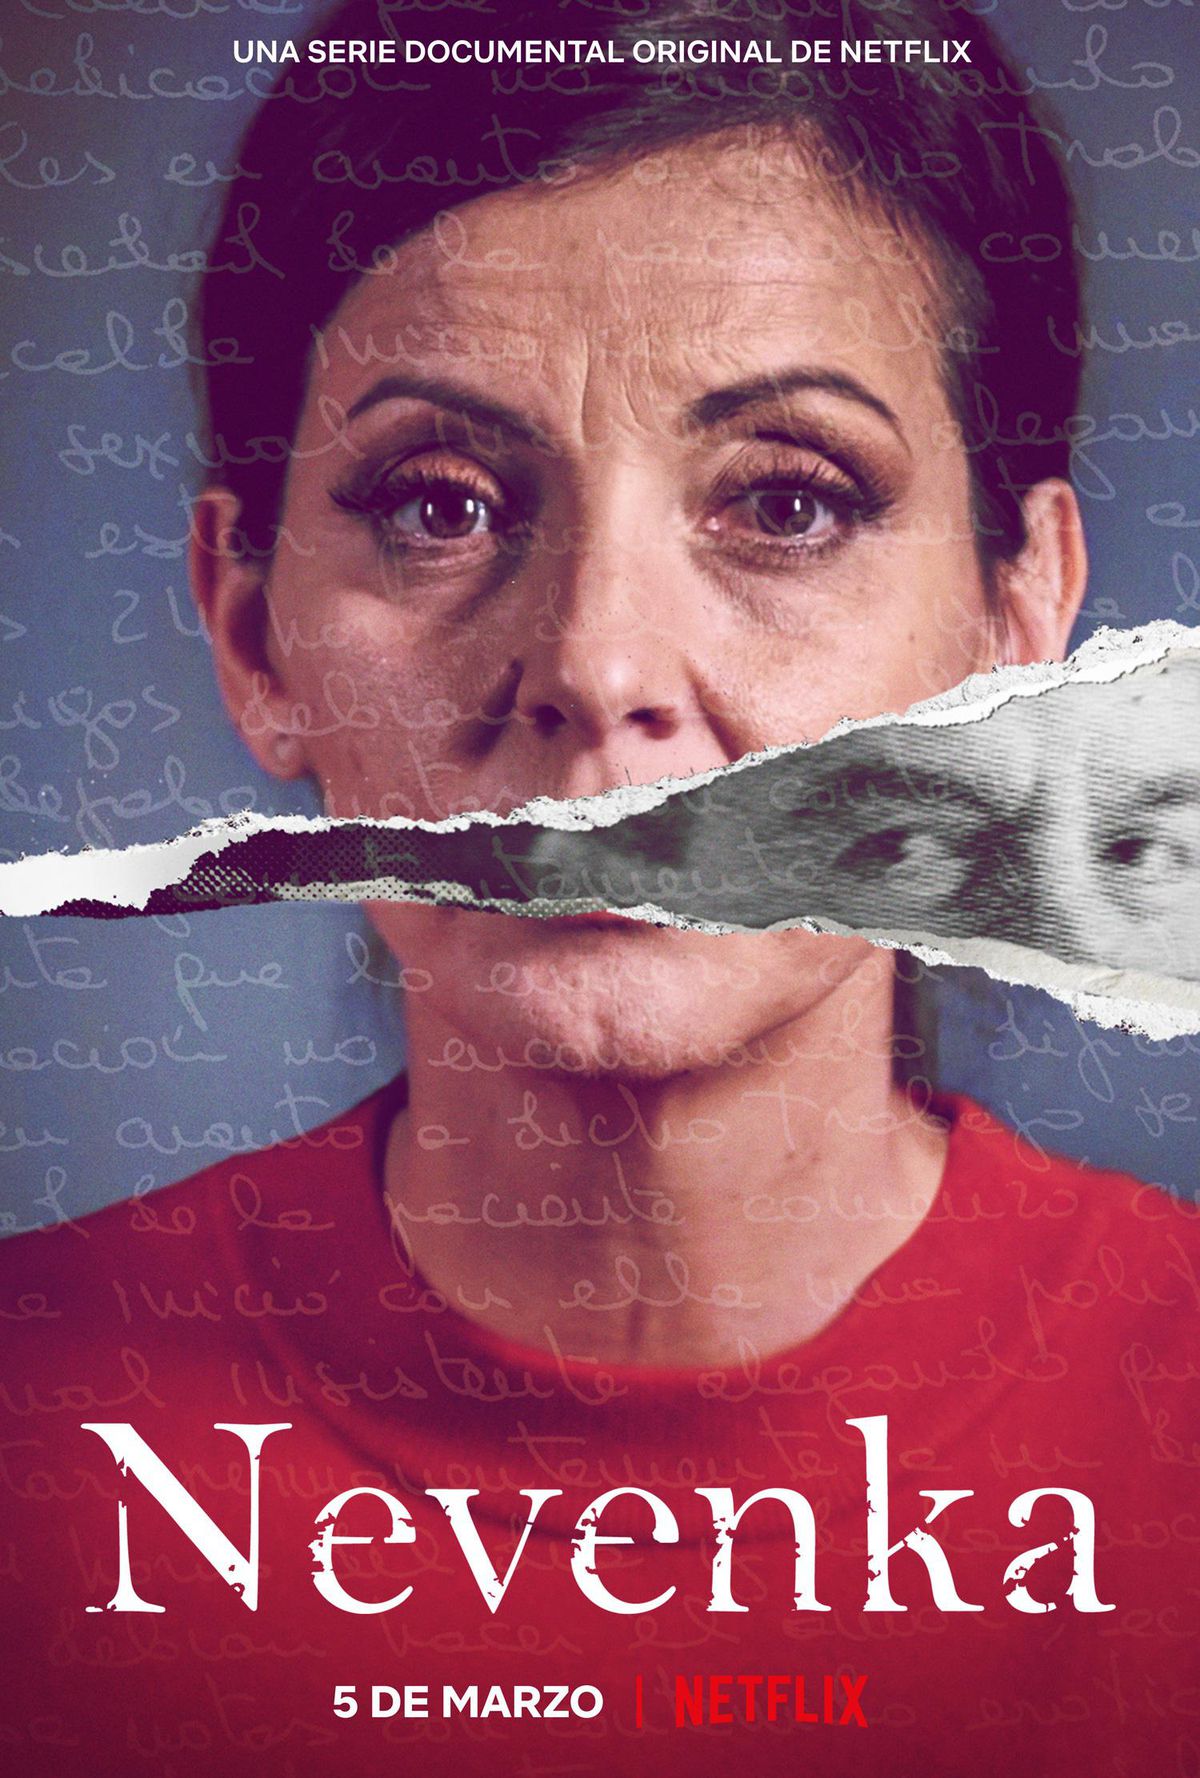 Nevenka: Rompiendo el silencio en Netflix: atractivo documental en español